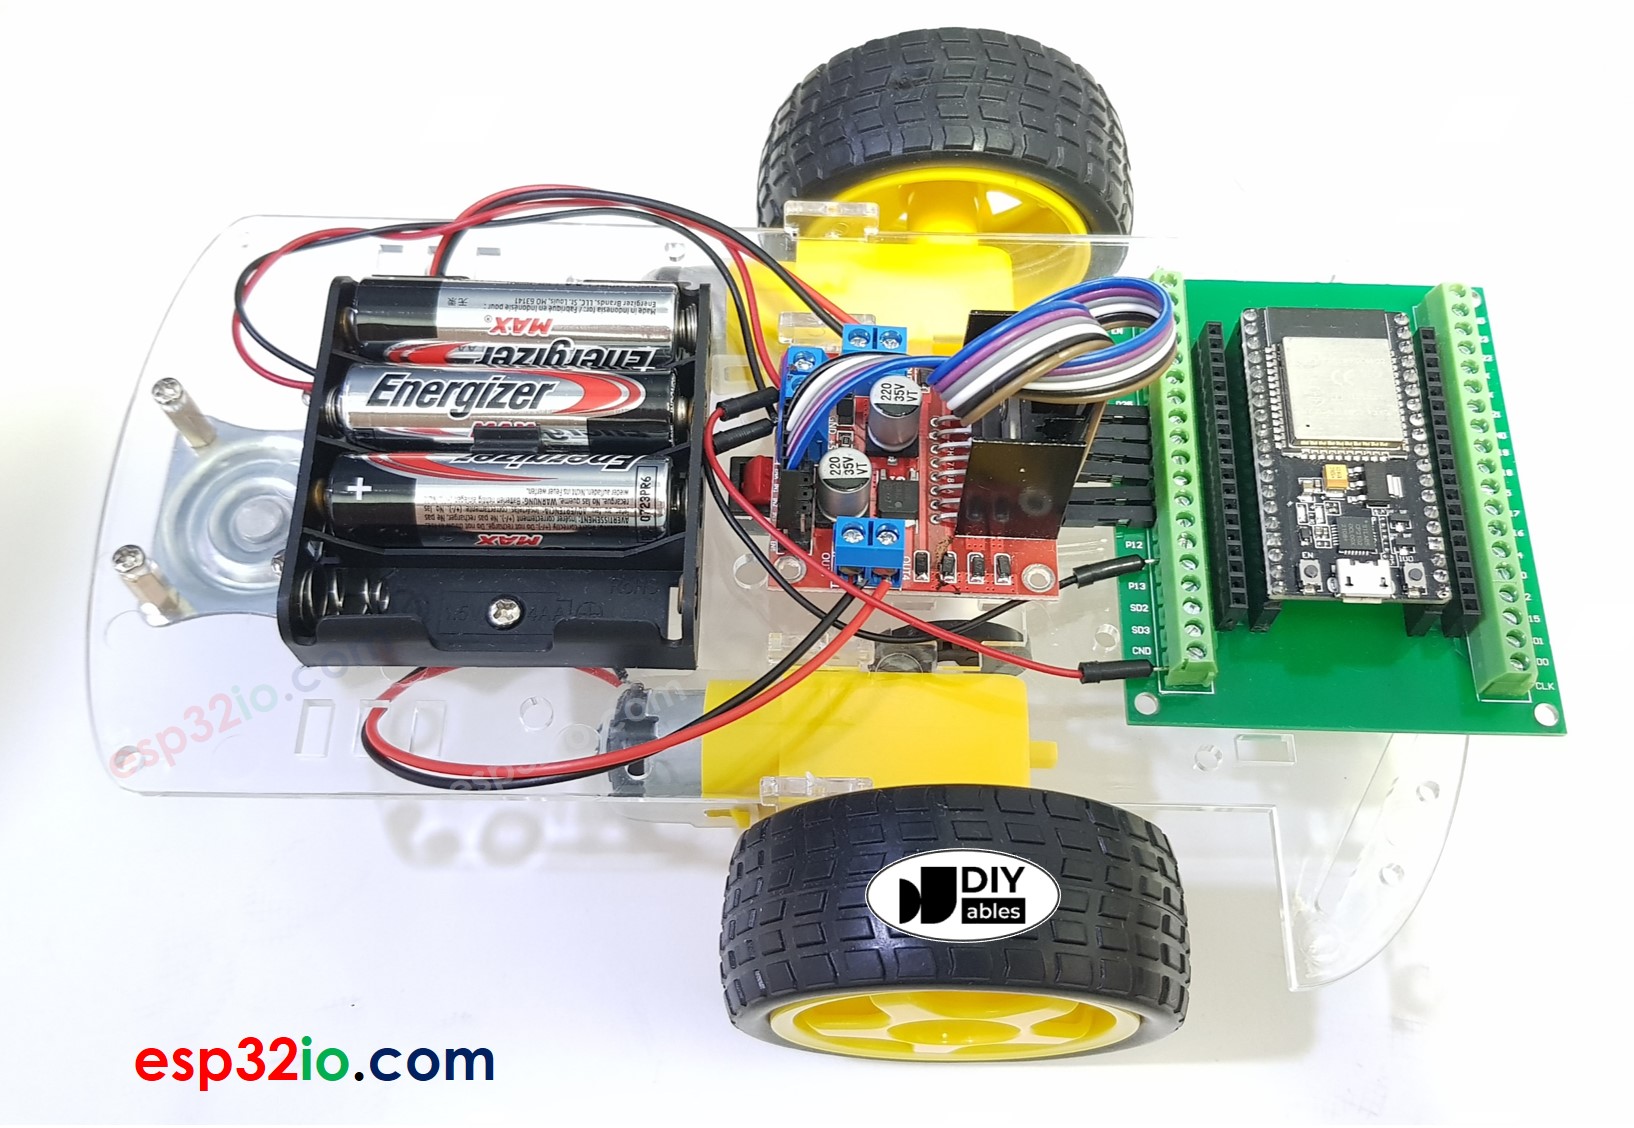 Arduino Nano ESP32 - Controls Car via Web